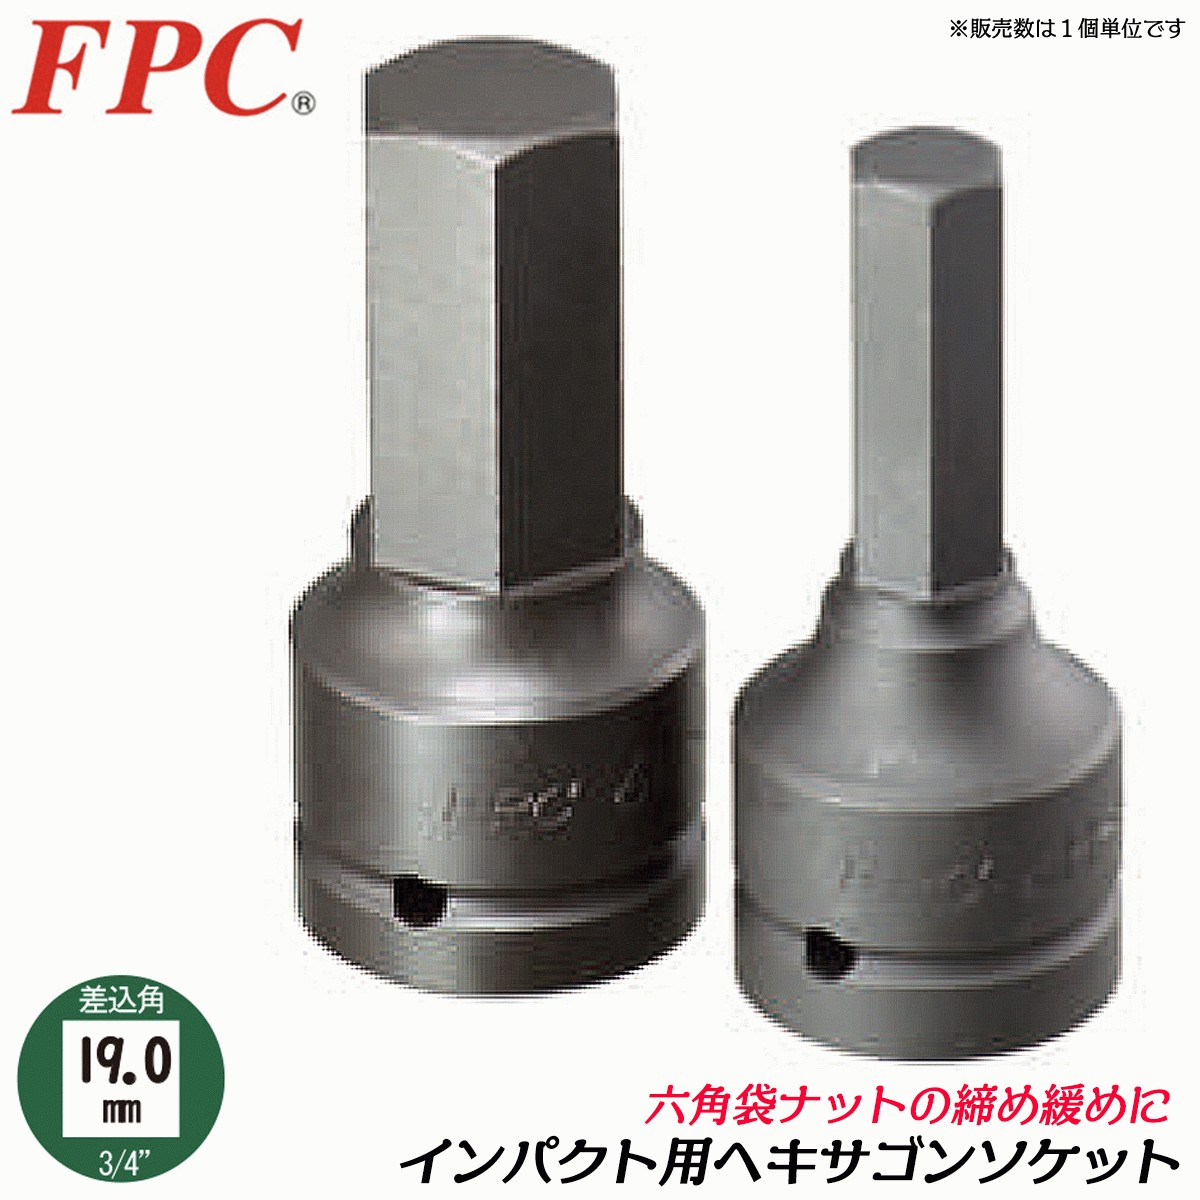 FPC インパクト用ヘキサゴンレンチ 六角24mm 差込角19.0mm 3/4 